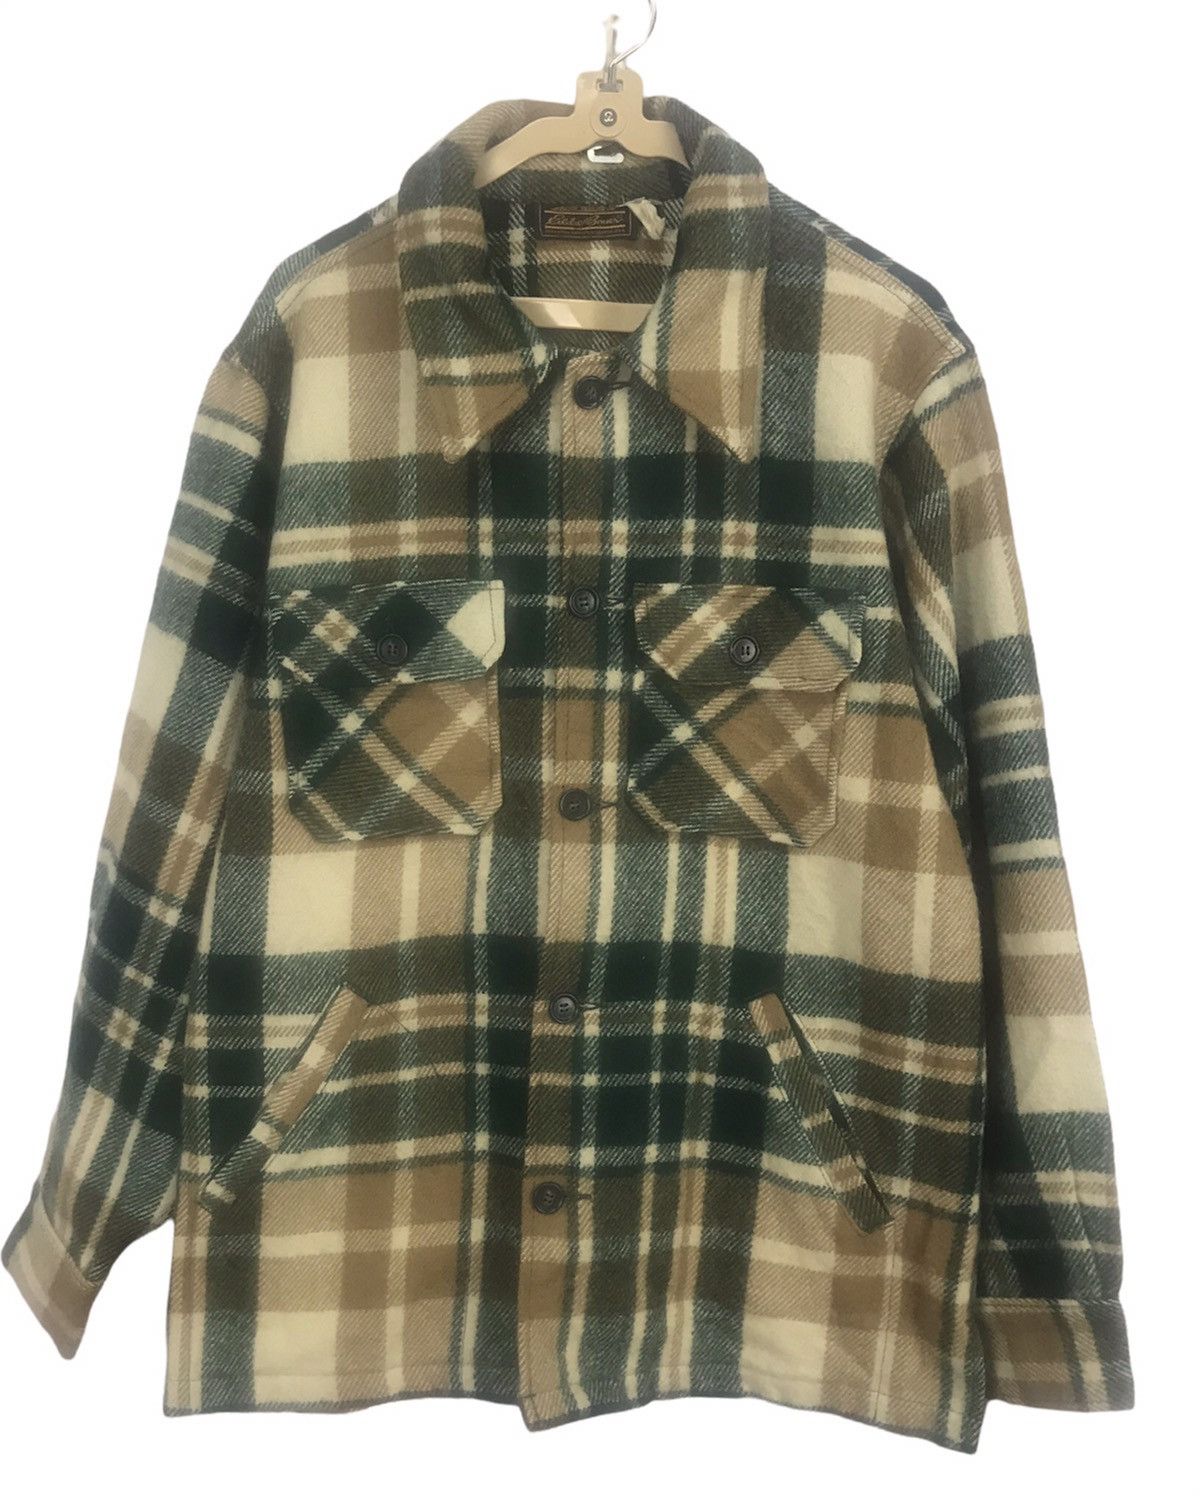 Eddie Bauer Vintage Eddie Bauer wool button up flannel shirt jacket ...